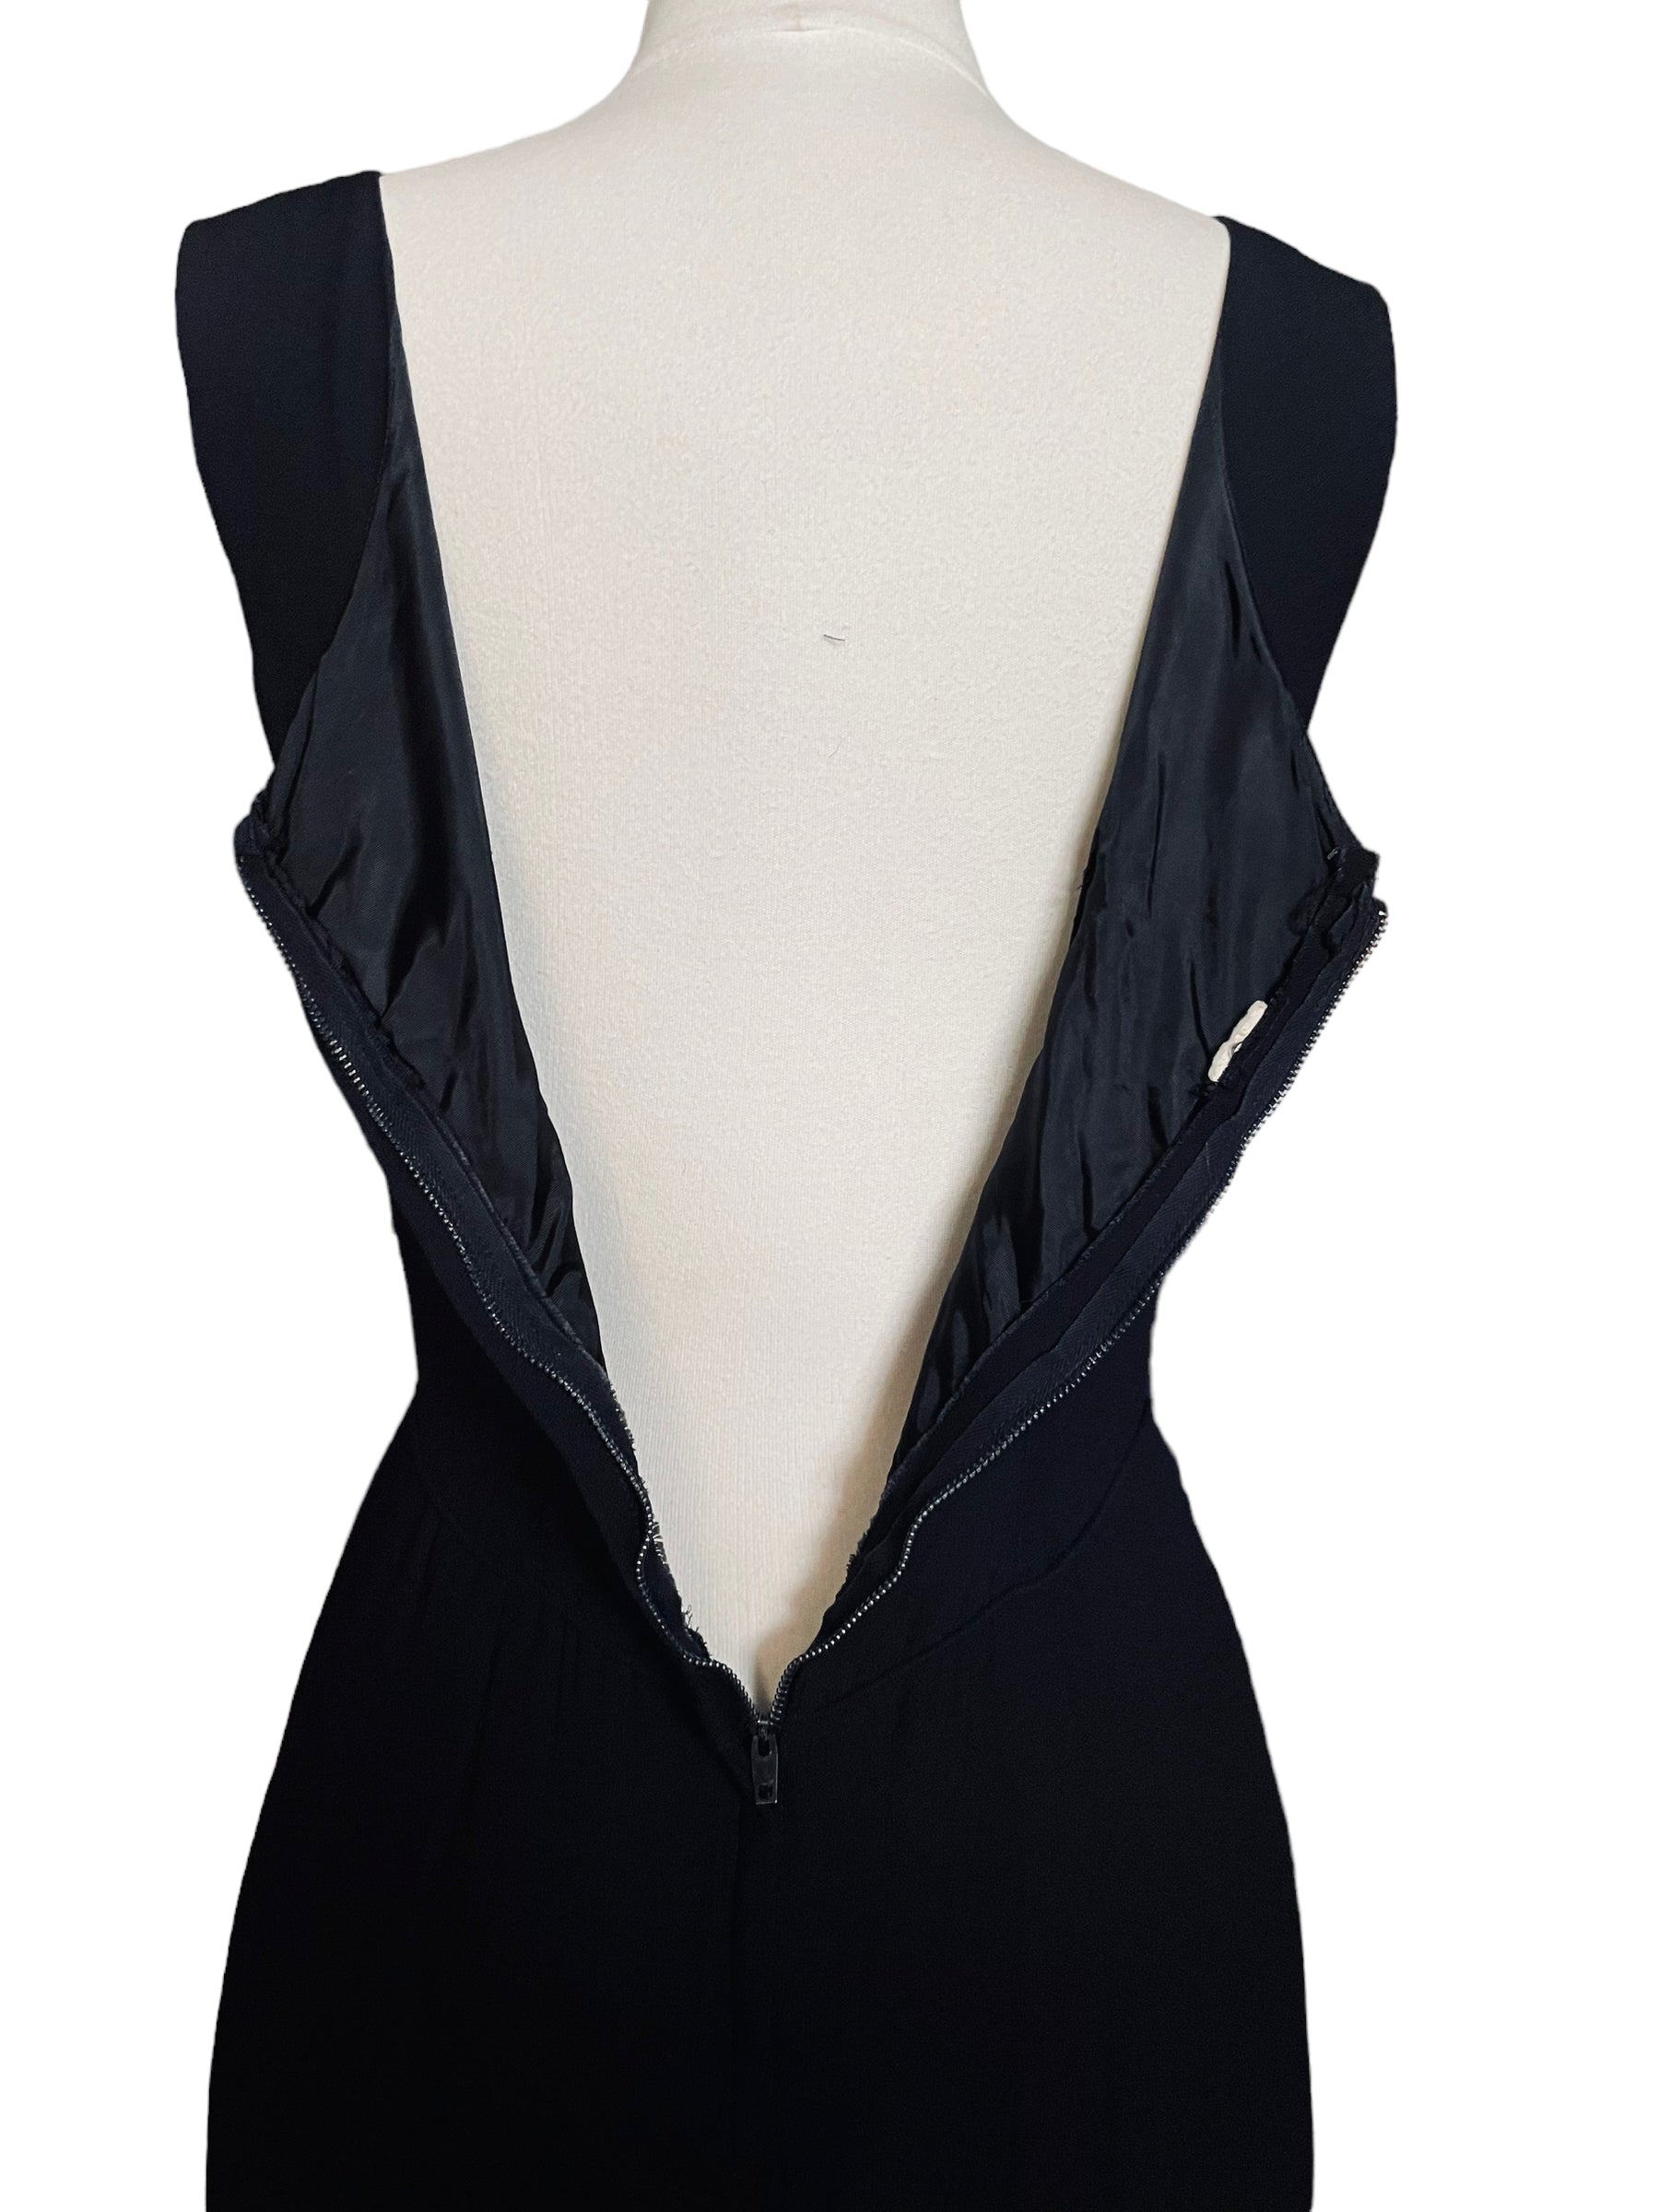 Open zipper back of Vintage 1950s Alfred Werber Black Maxi Dress |  Barn Owl Vintage | Seattle Vintage Dresses